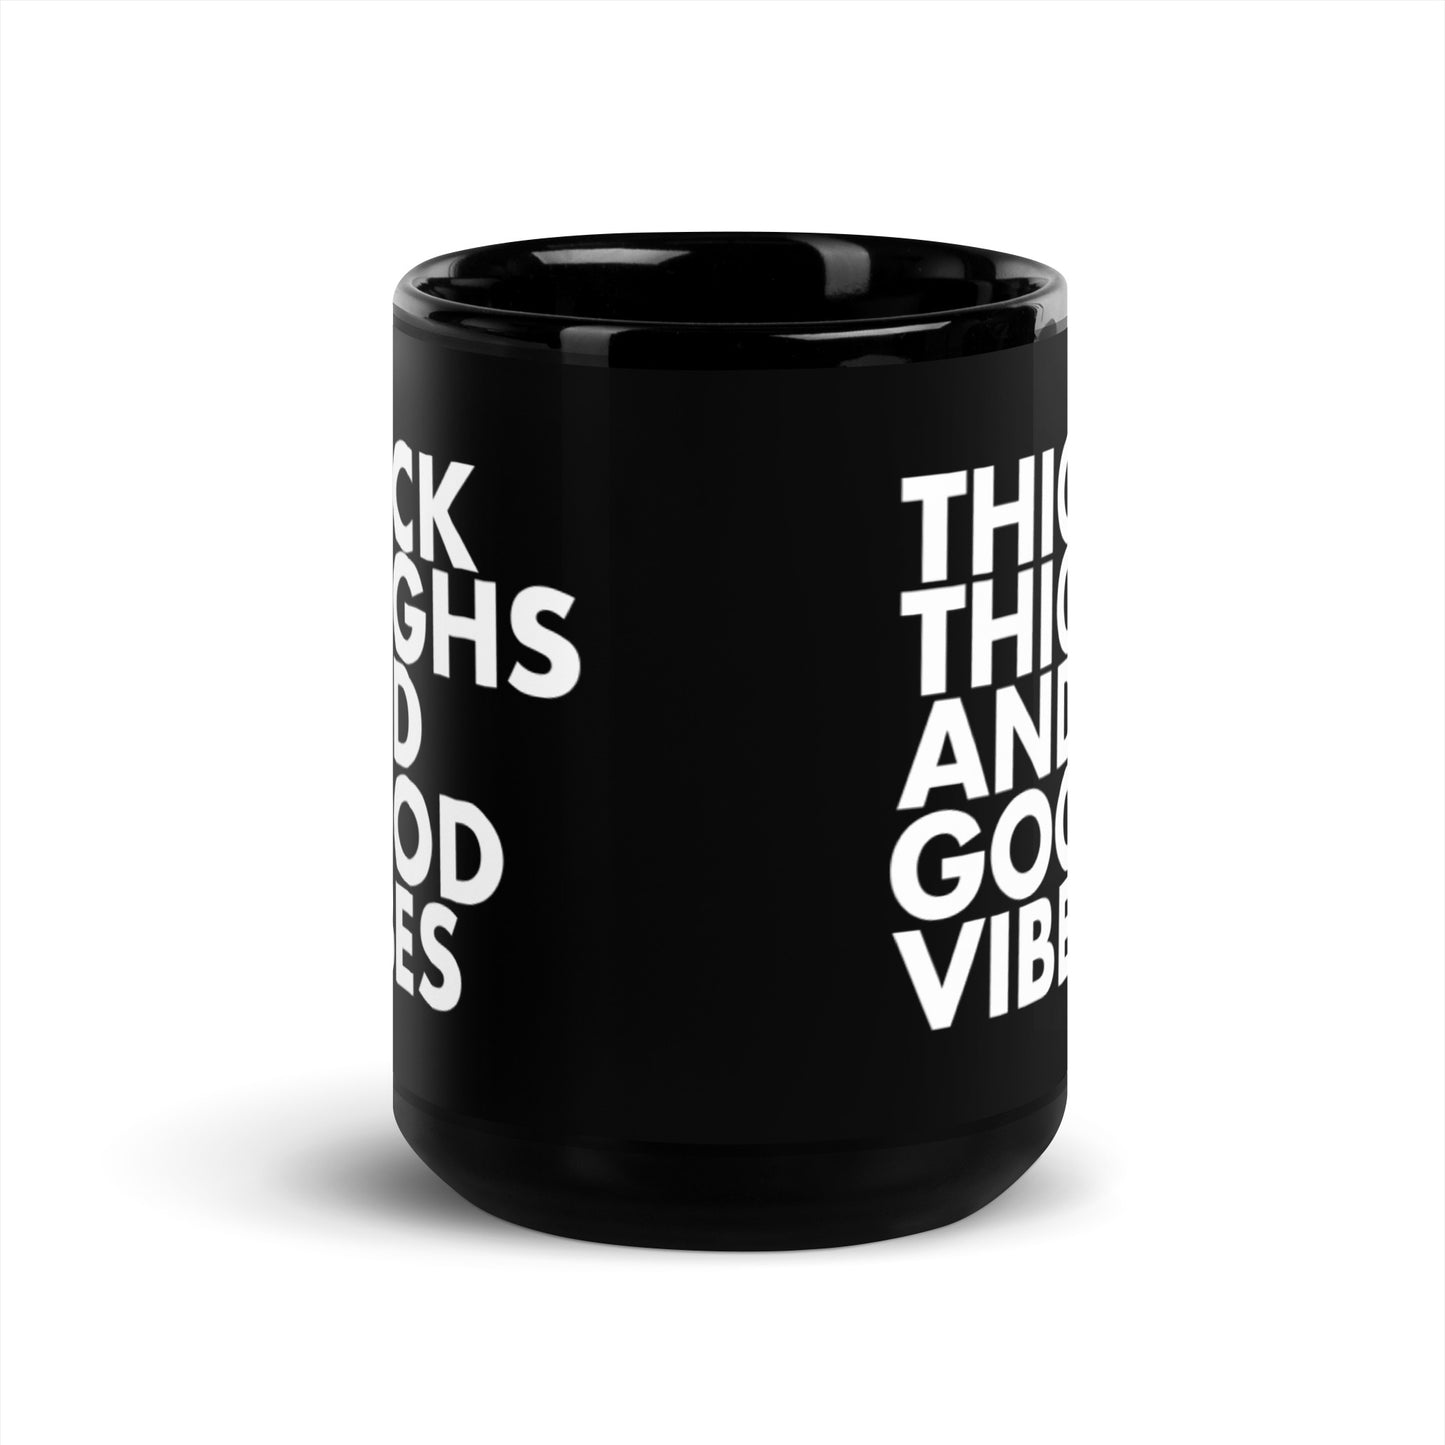 The THICK Thigh and Good Vibes Mug